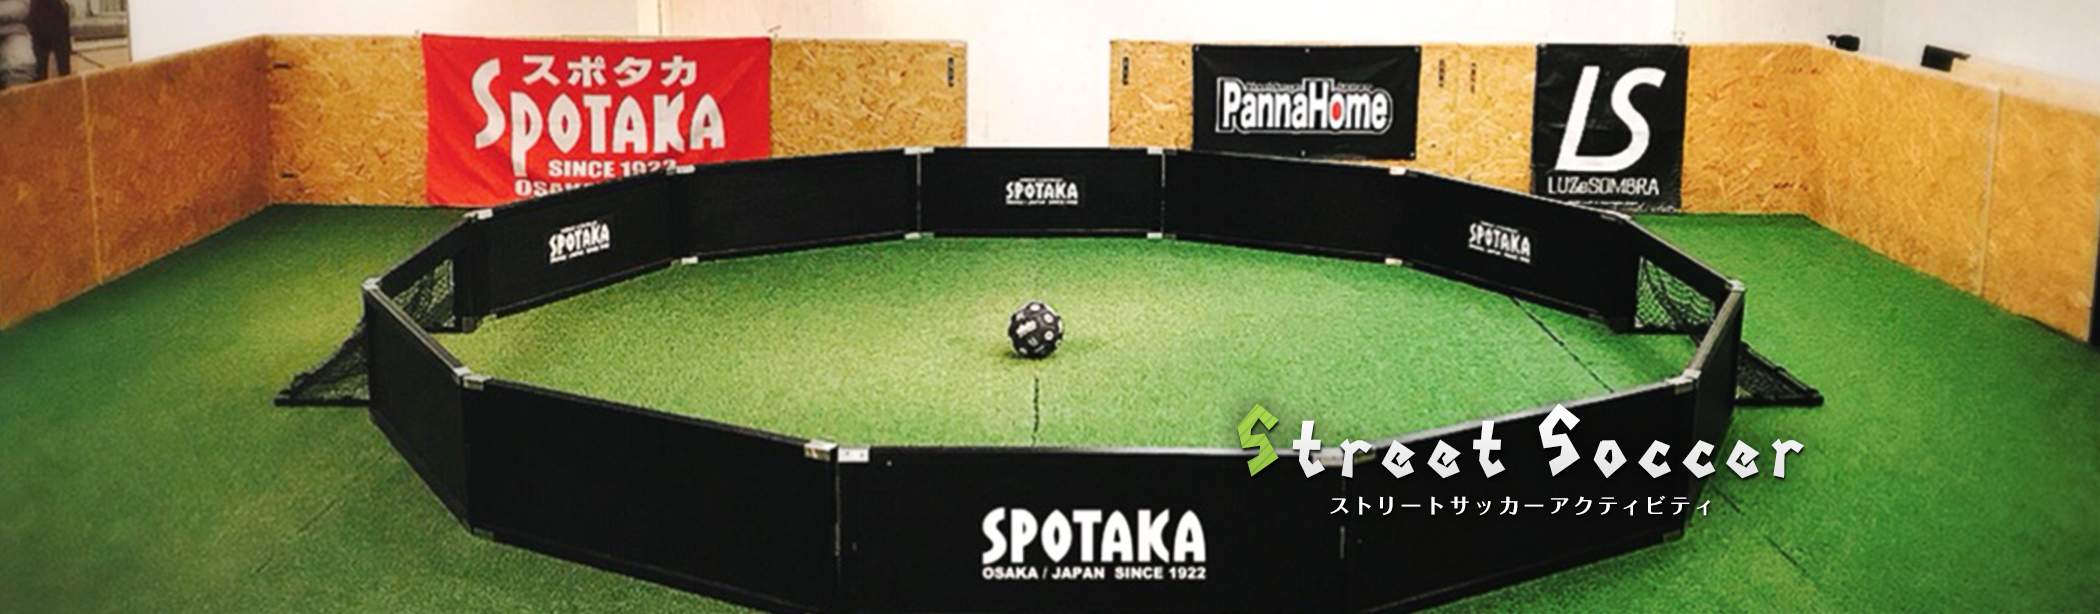 大阪で大人気のスポーツ用品店スポタカのフットサル紹介ページです スポーツ用品通販 スポタカ公式